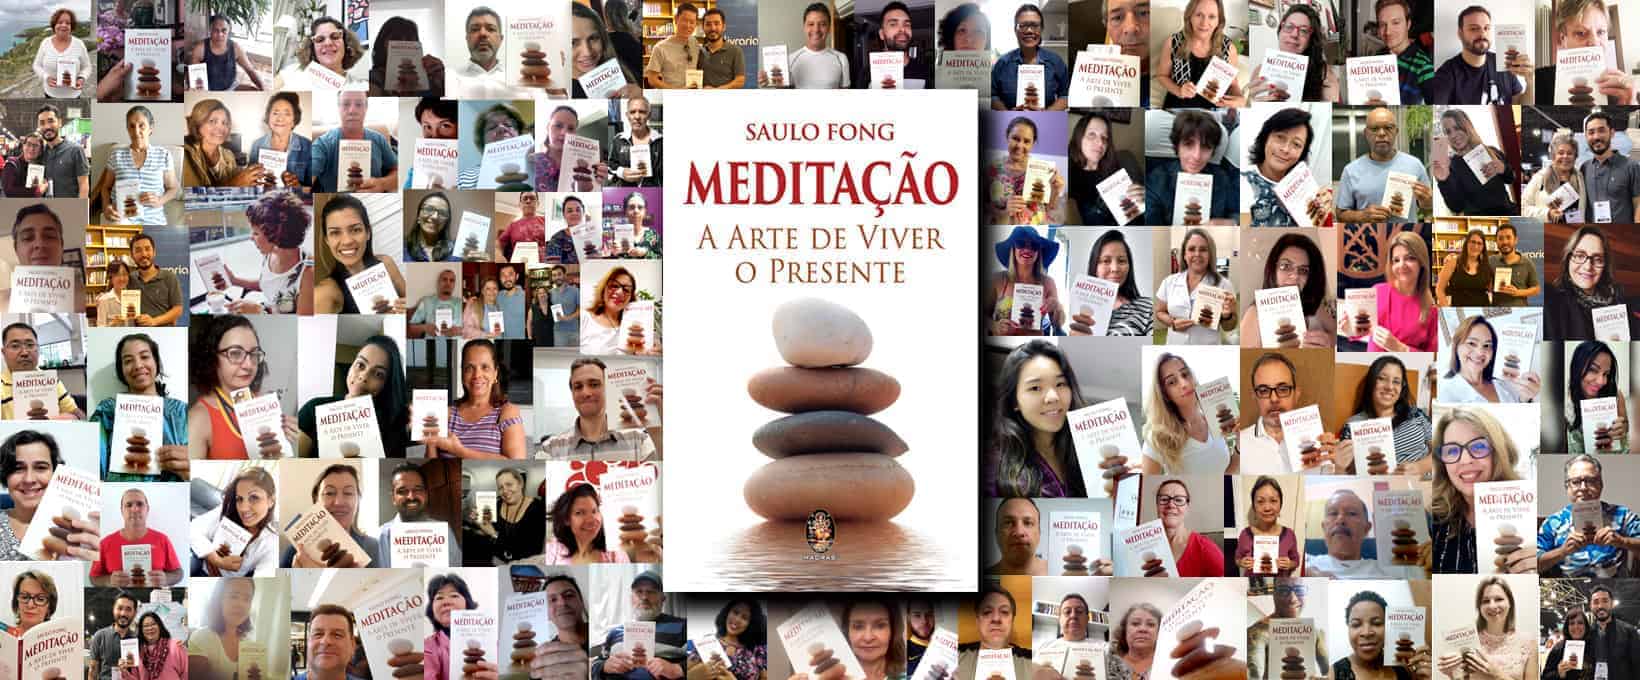 Livro de Meditação mais vendido no Brasil